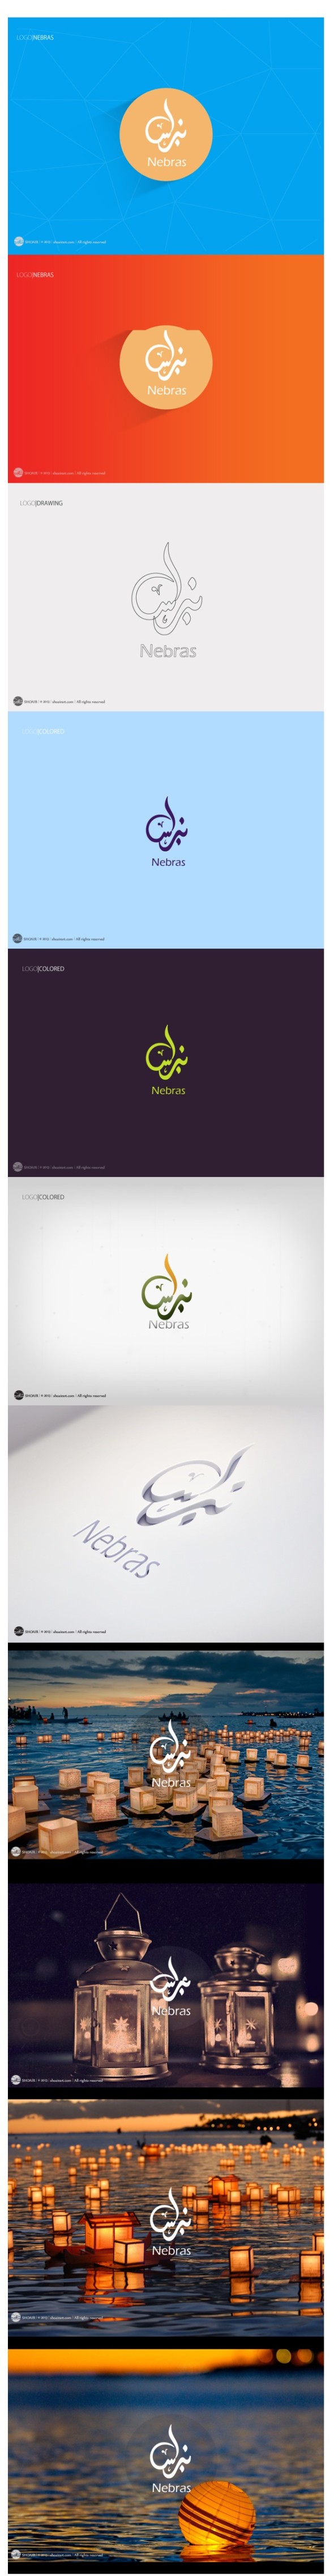 NEBRAS Arabic logo on Behance